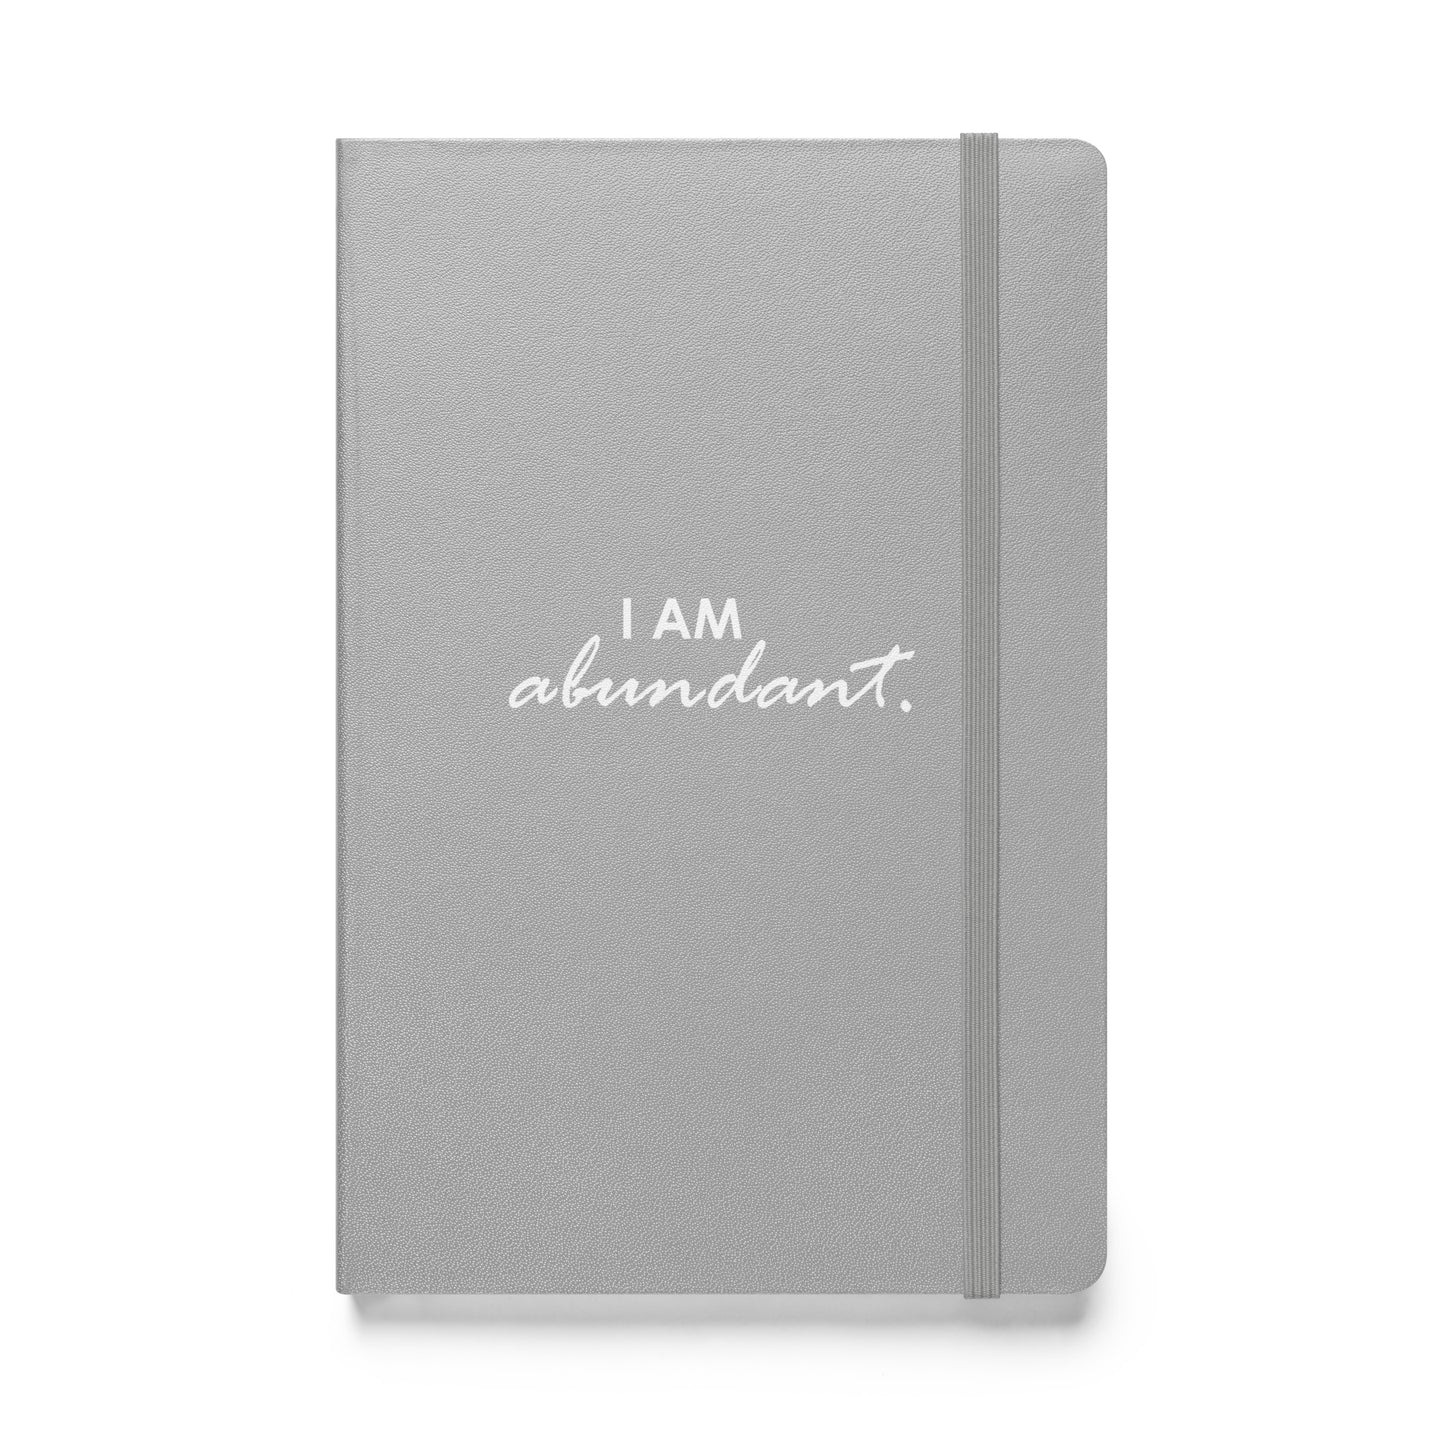 I AM ABUNDANT - Hardcover bound notebook & FREE Affirmation Digital Download